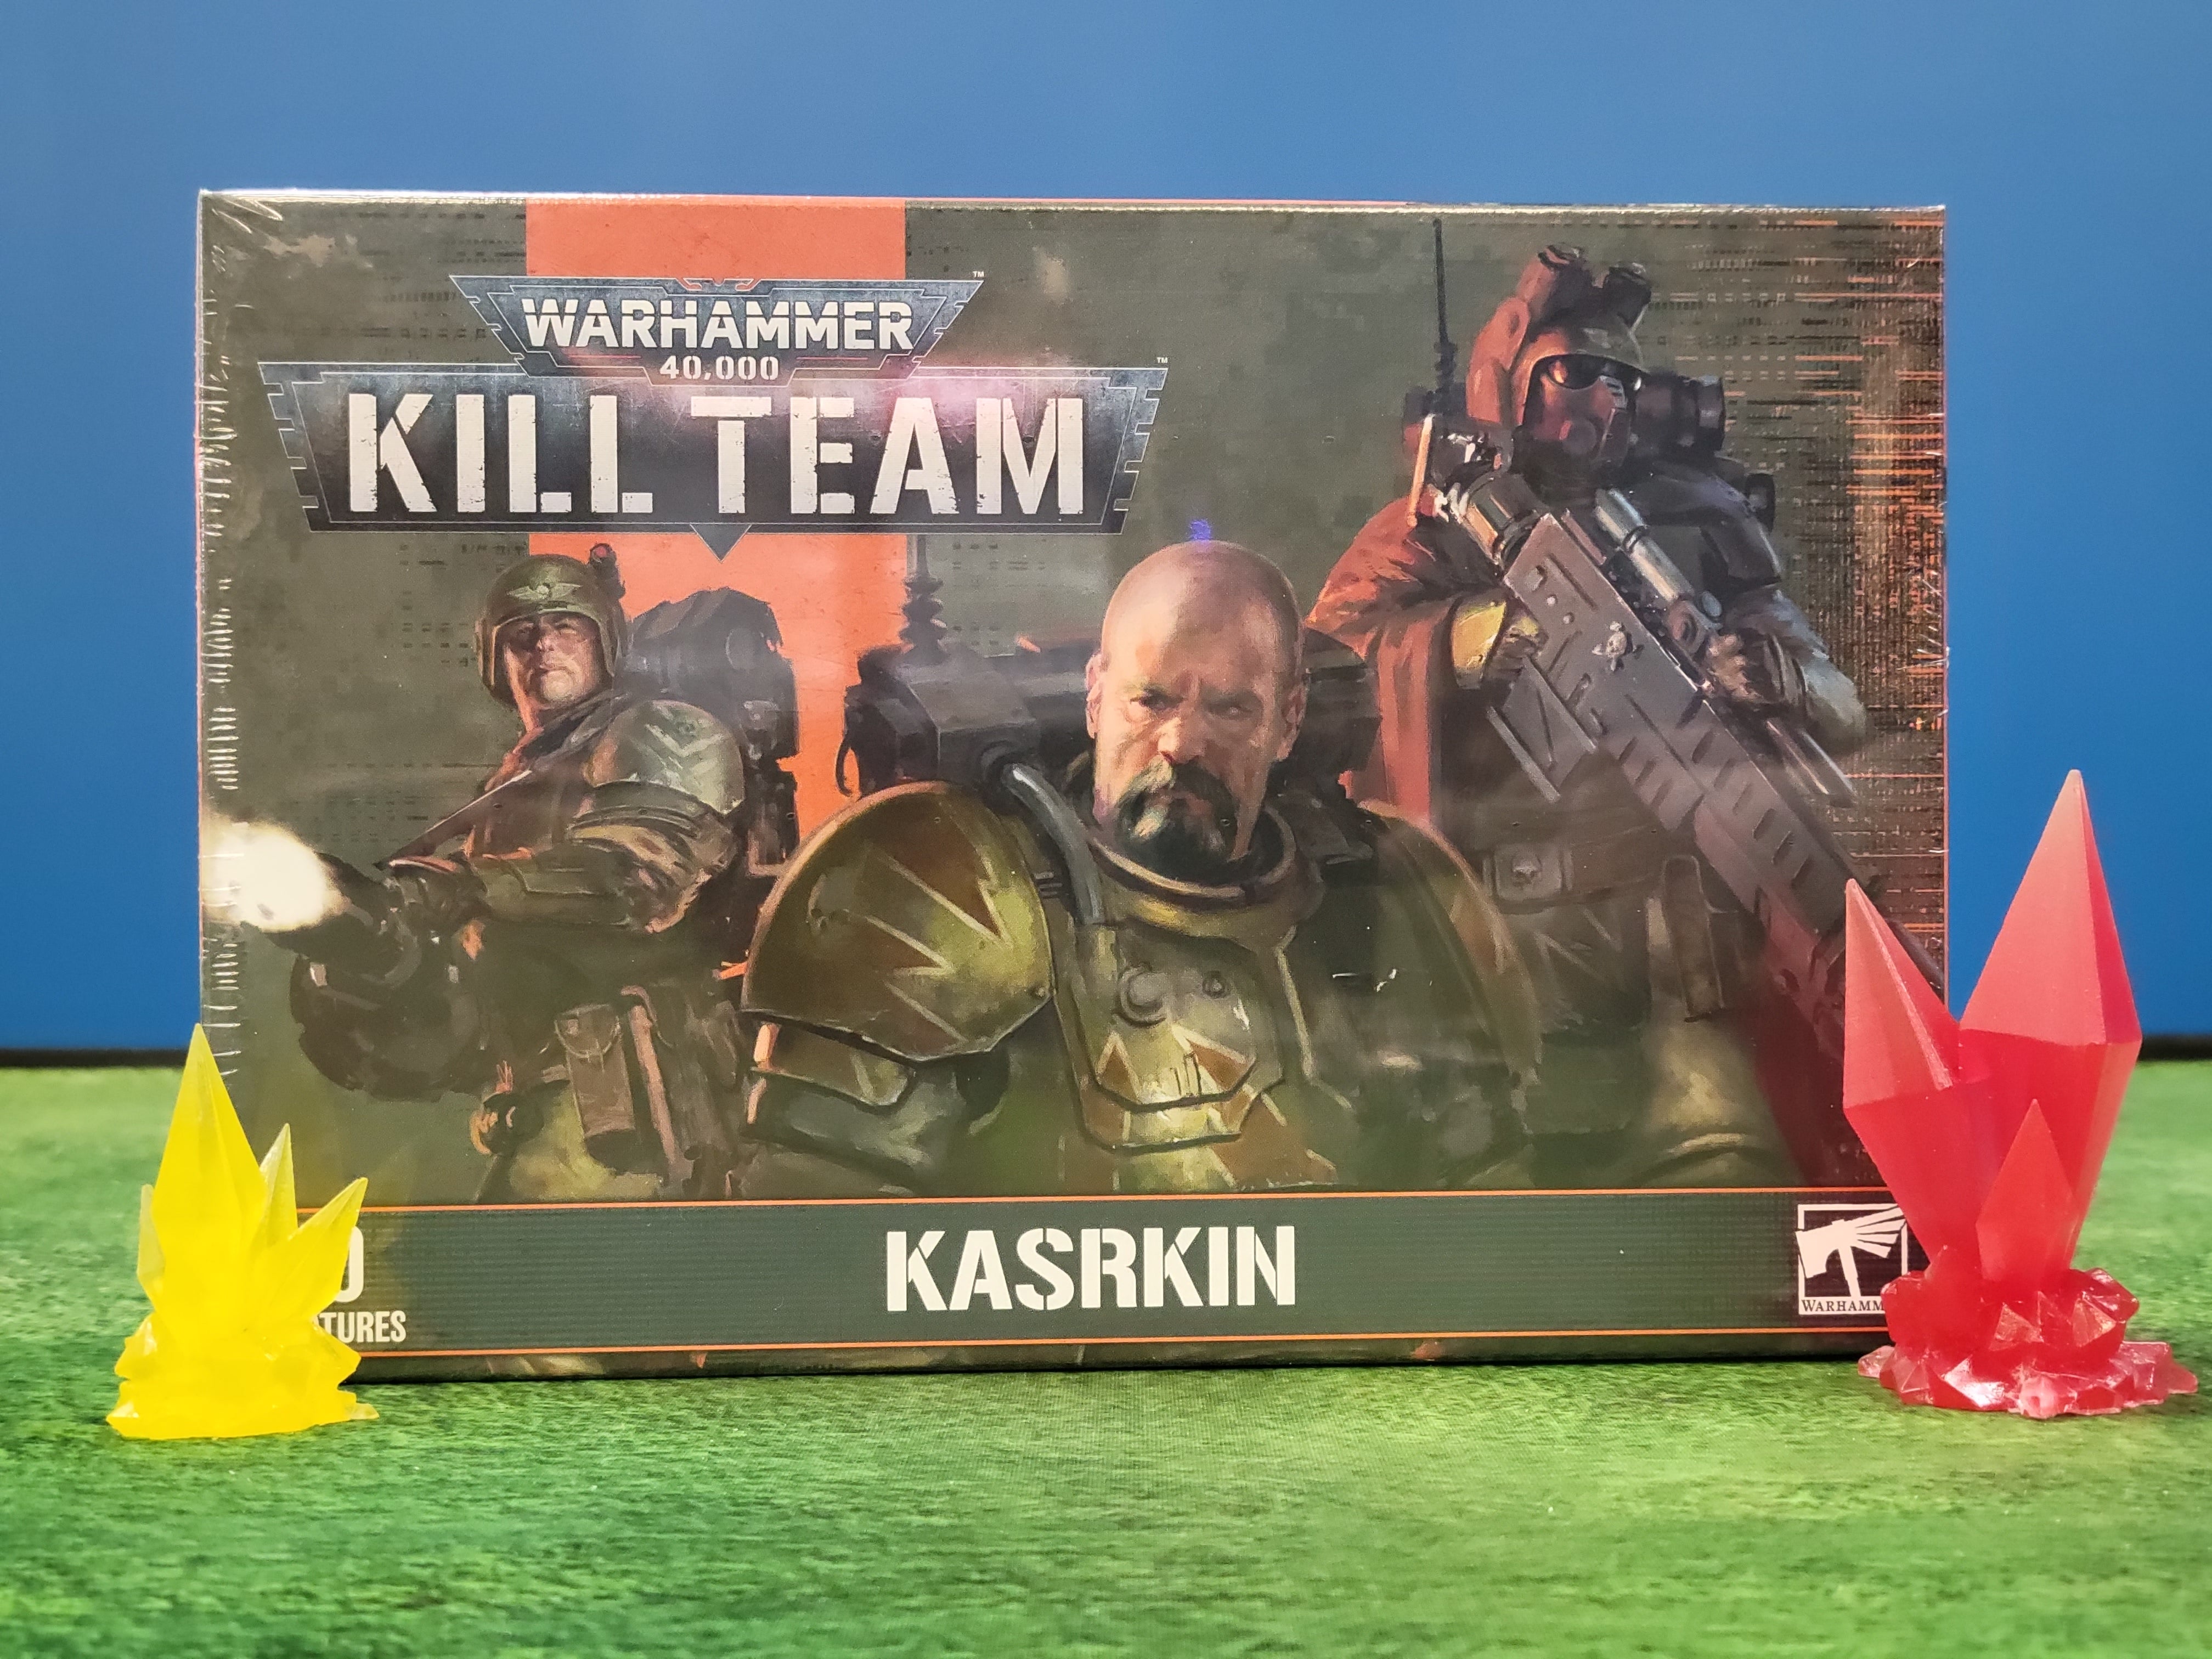 Kill Team: Kasrkin